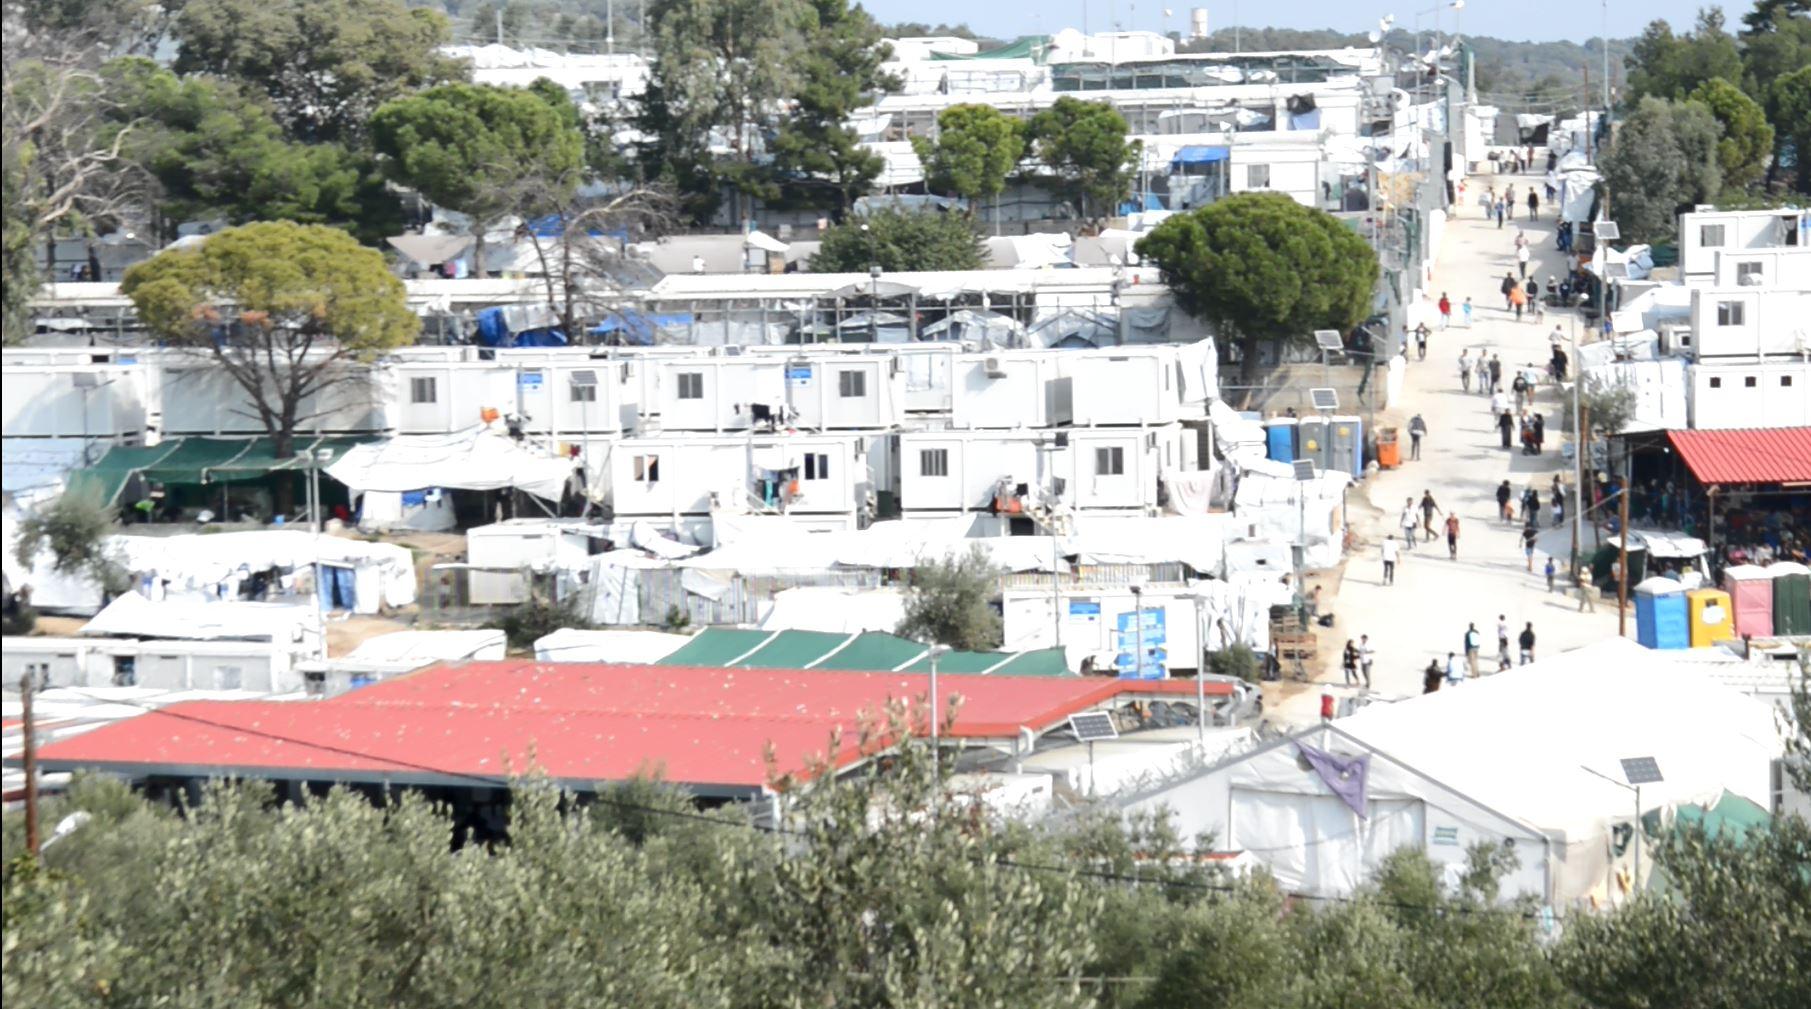 Les containers sont superposés pour faire face à l'afflux de migrants dans le camp de Moria, à Lesbos. [RTS - Angélique Kourounis]